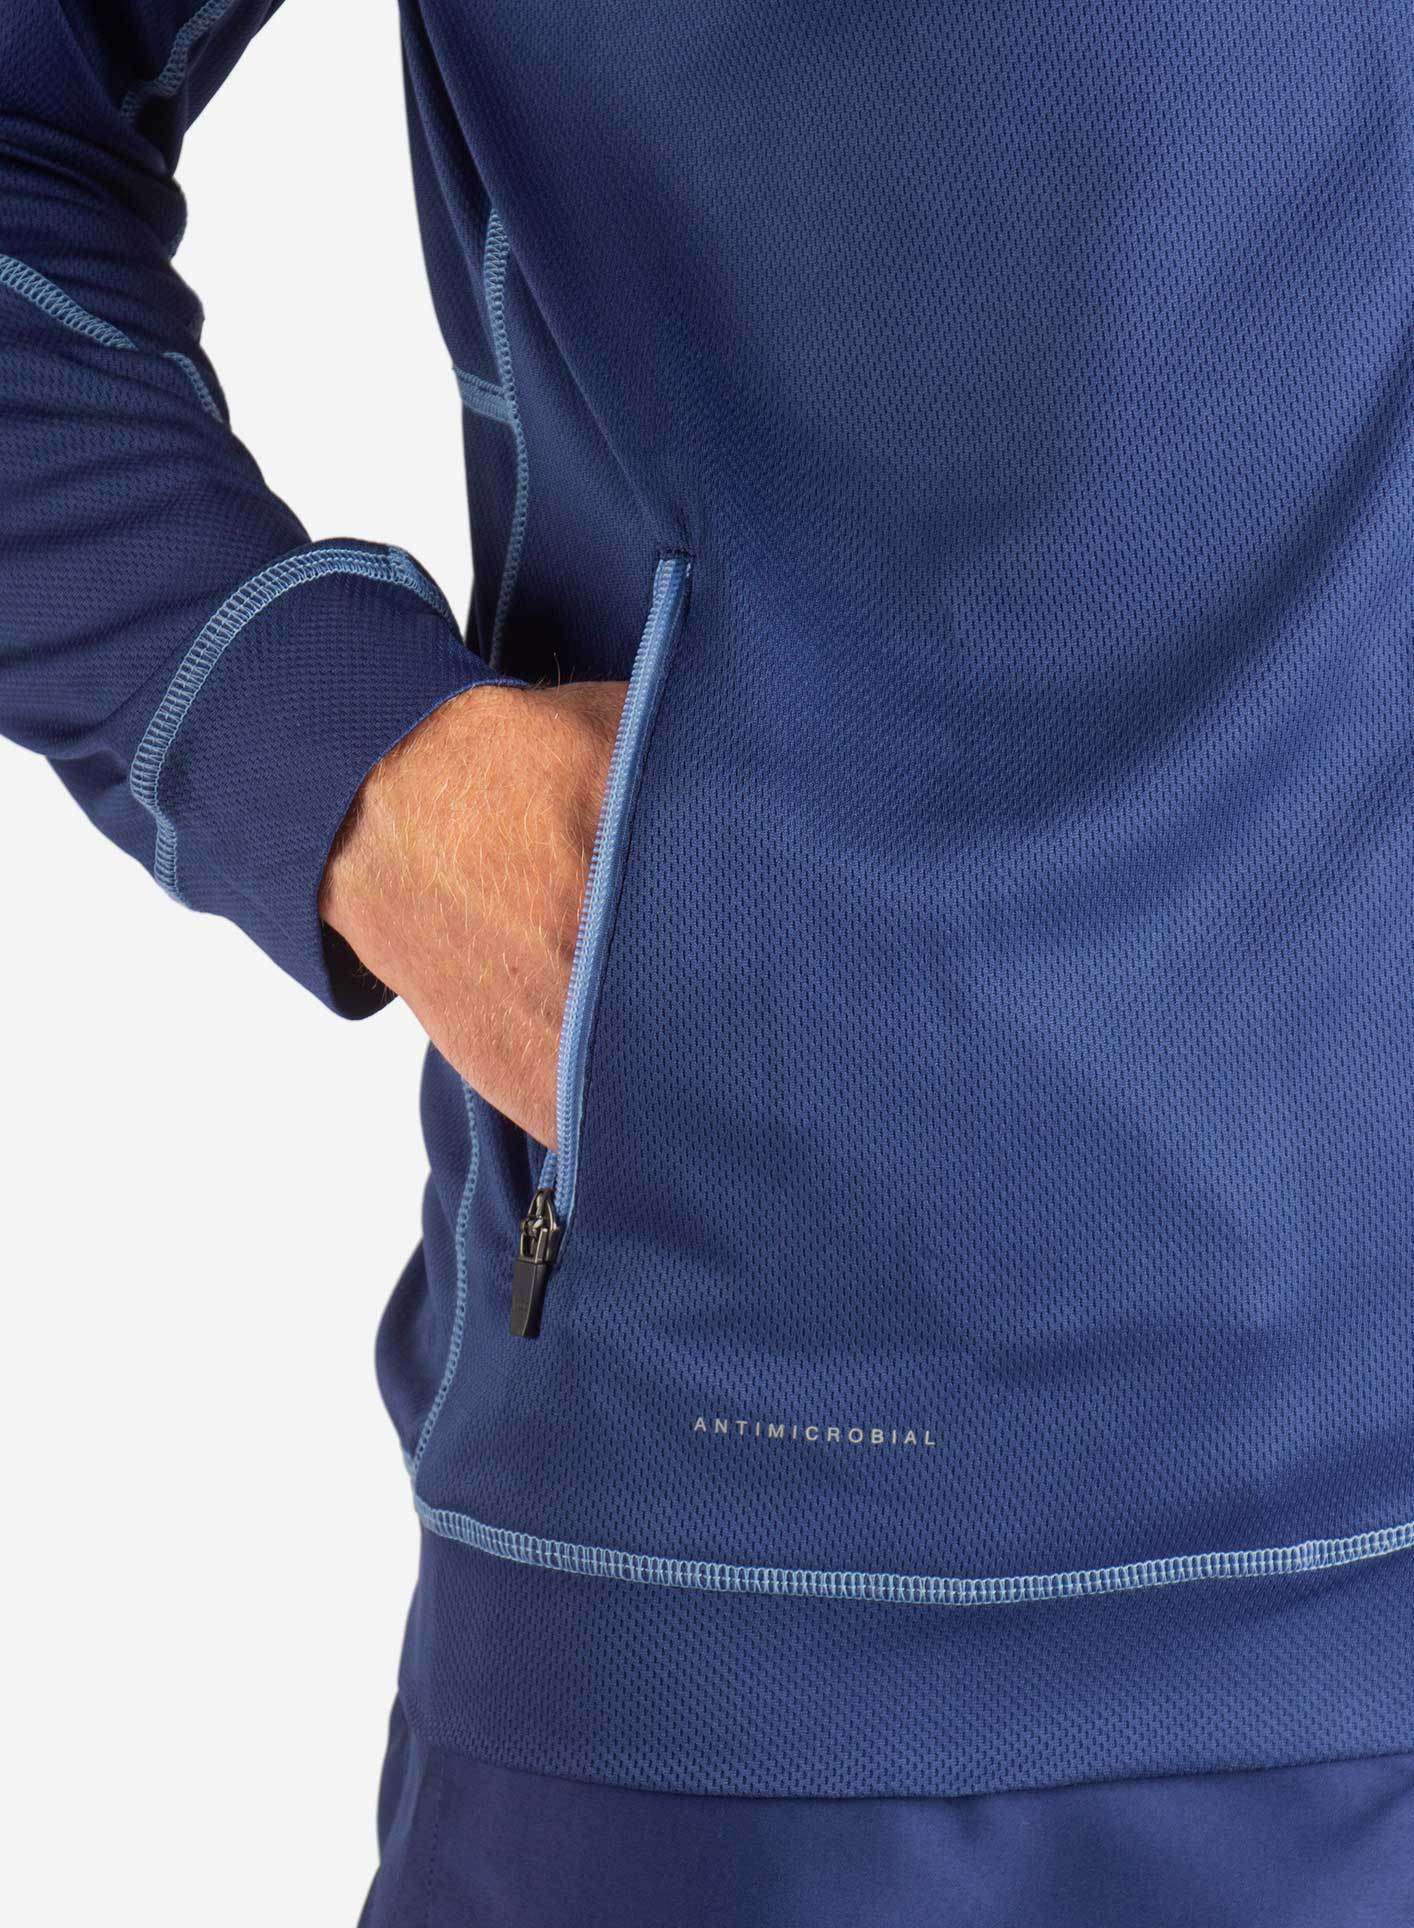 mens Elements scrub jacket navy blue pocket detail